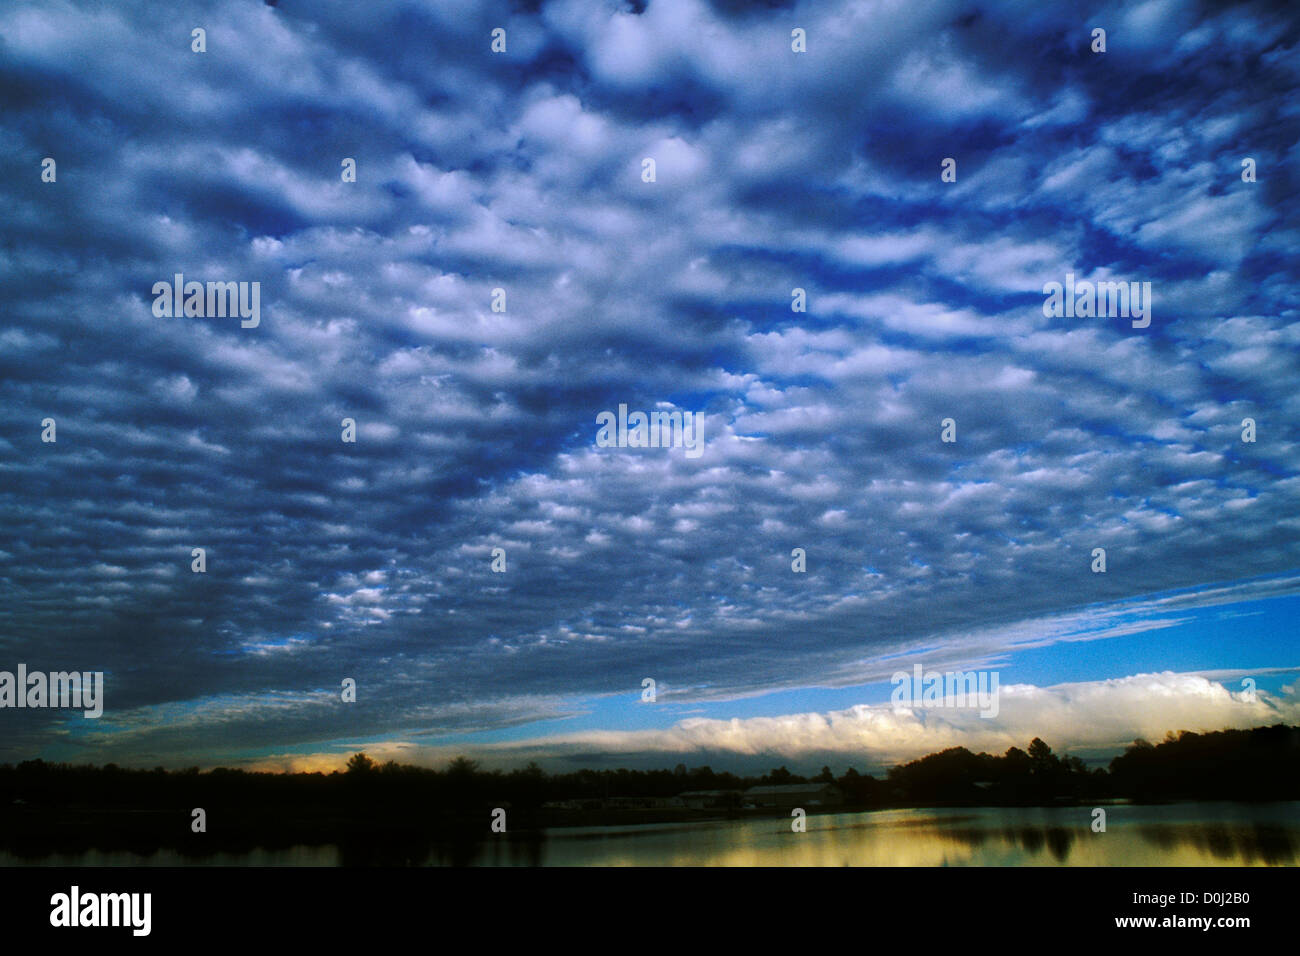 Altocumulus Undulatus Clouds Blanket the Sky Stock Photo